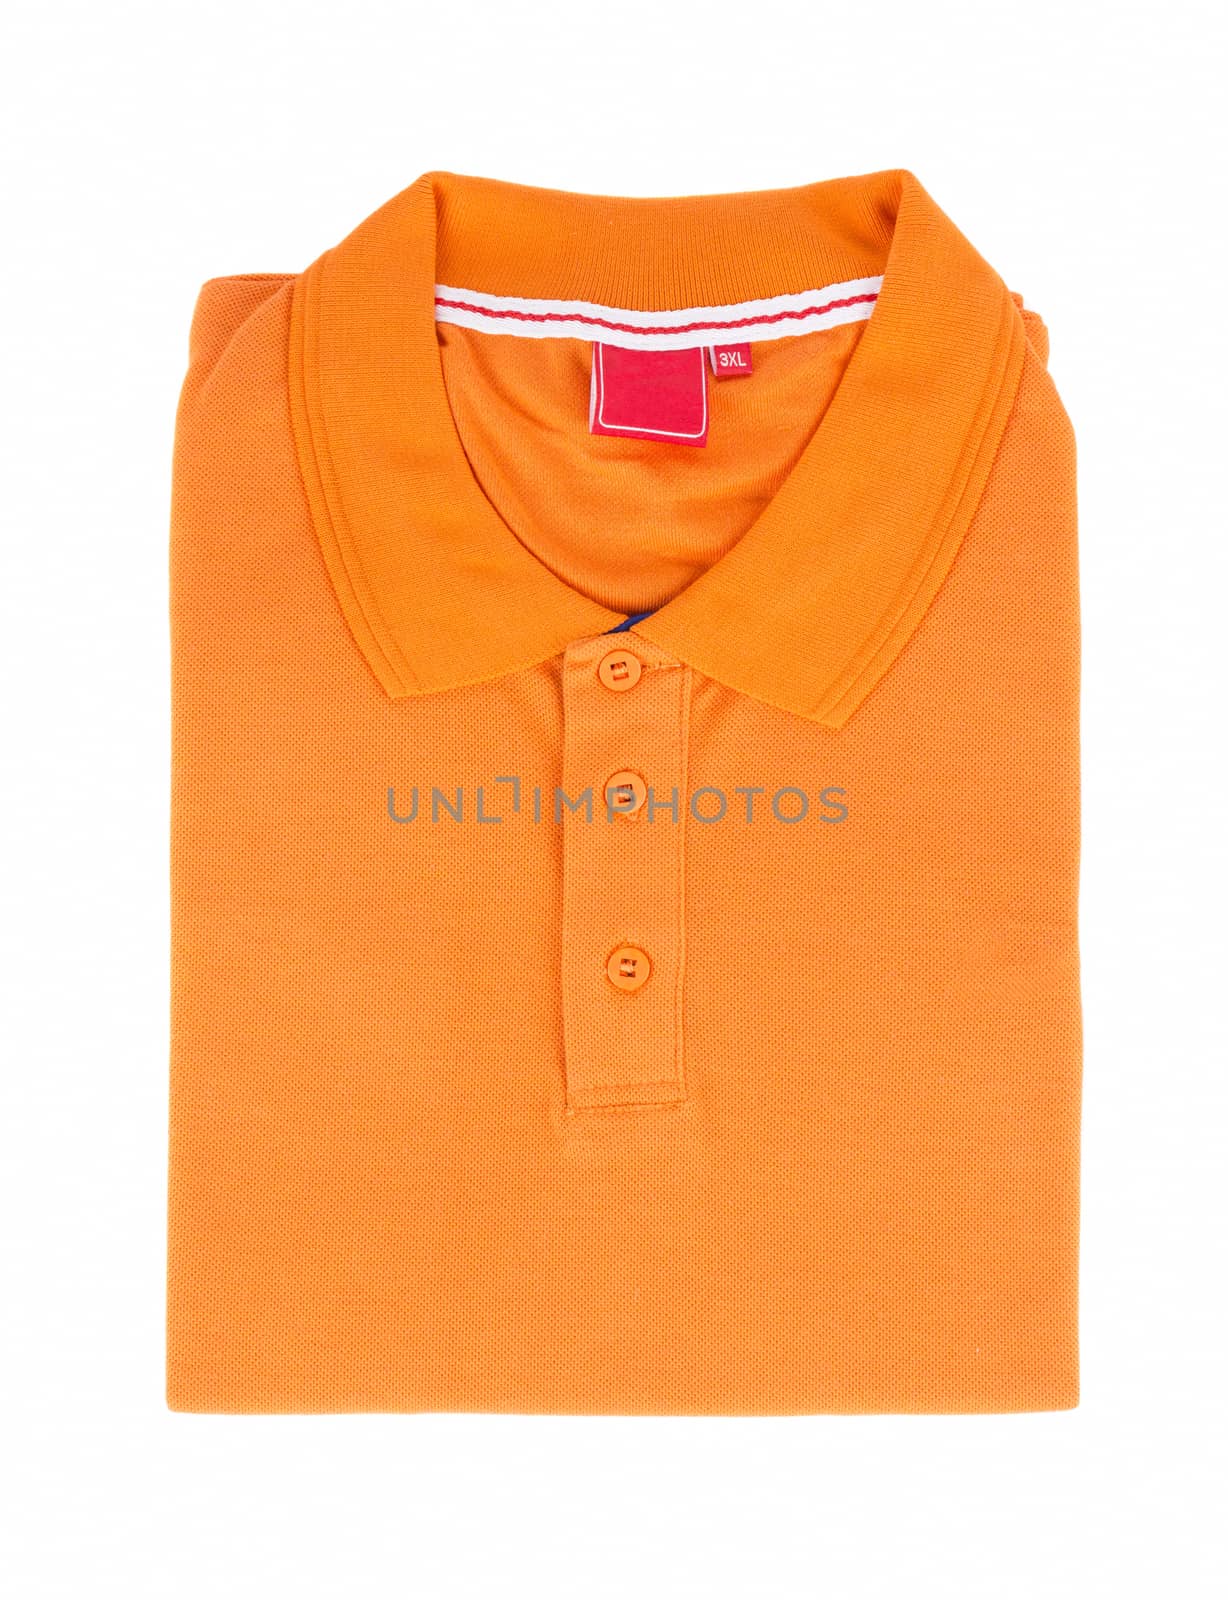 orange t-shirt template by ozaiachin